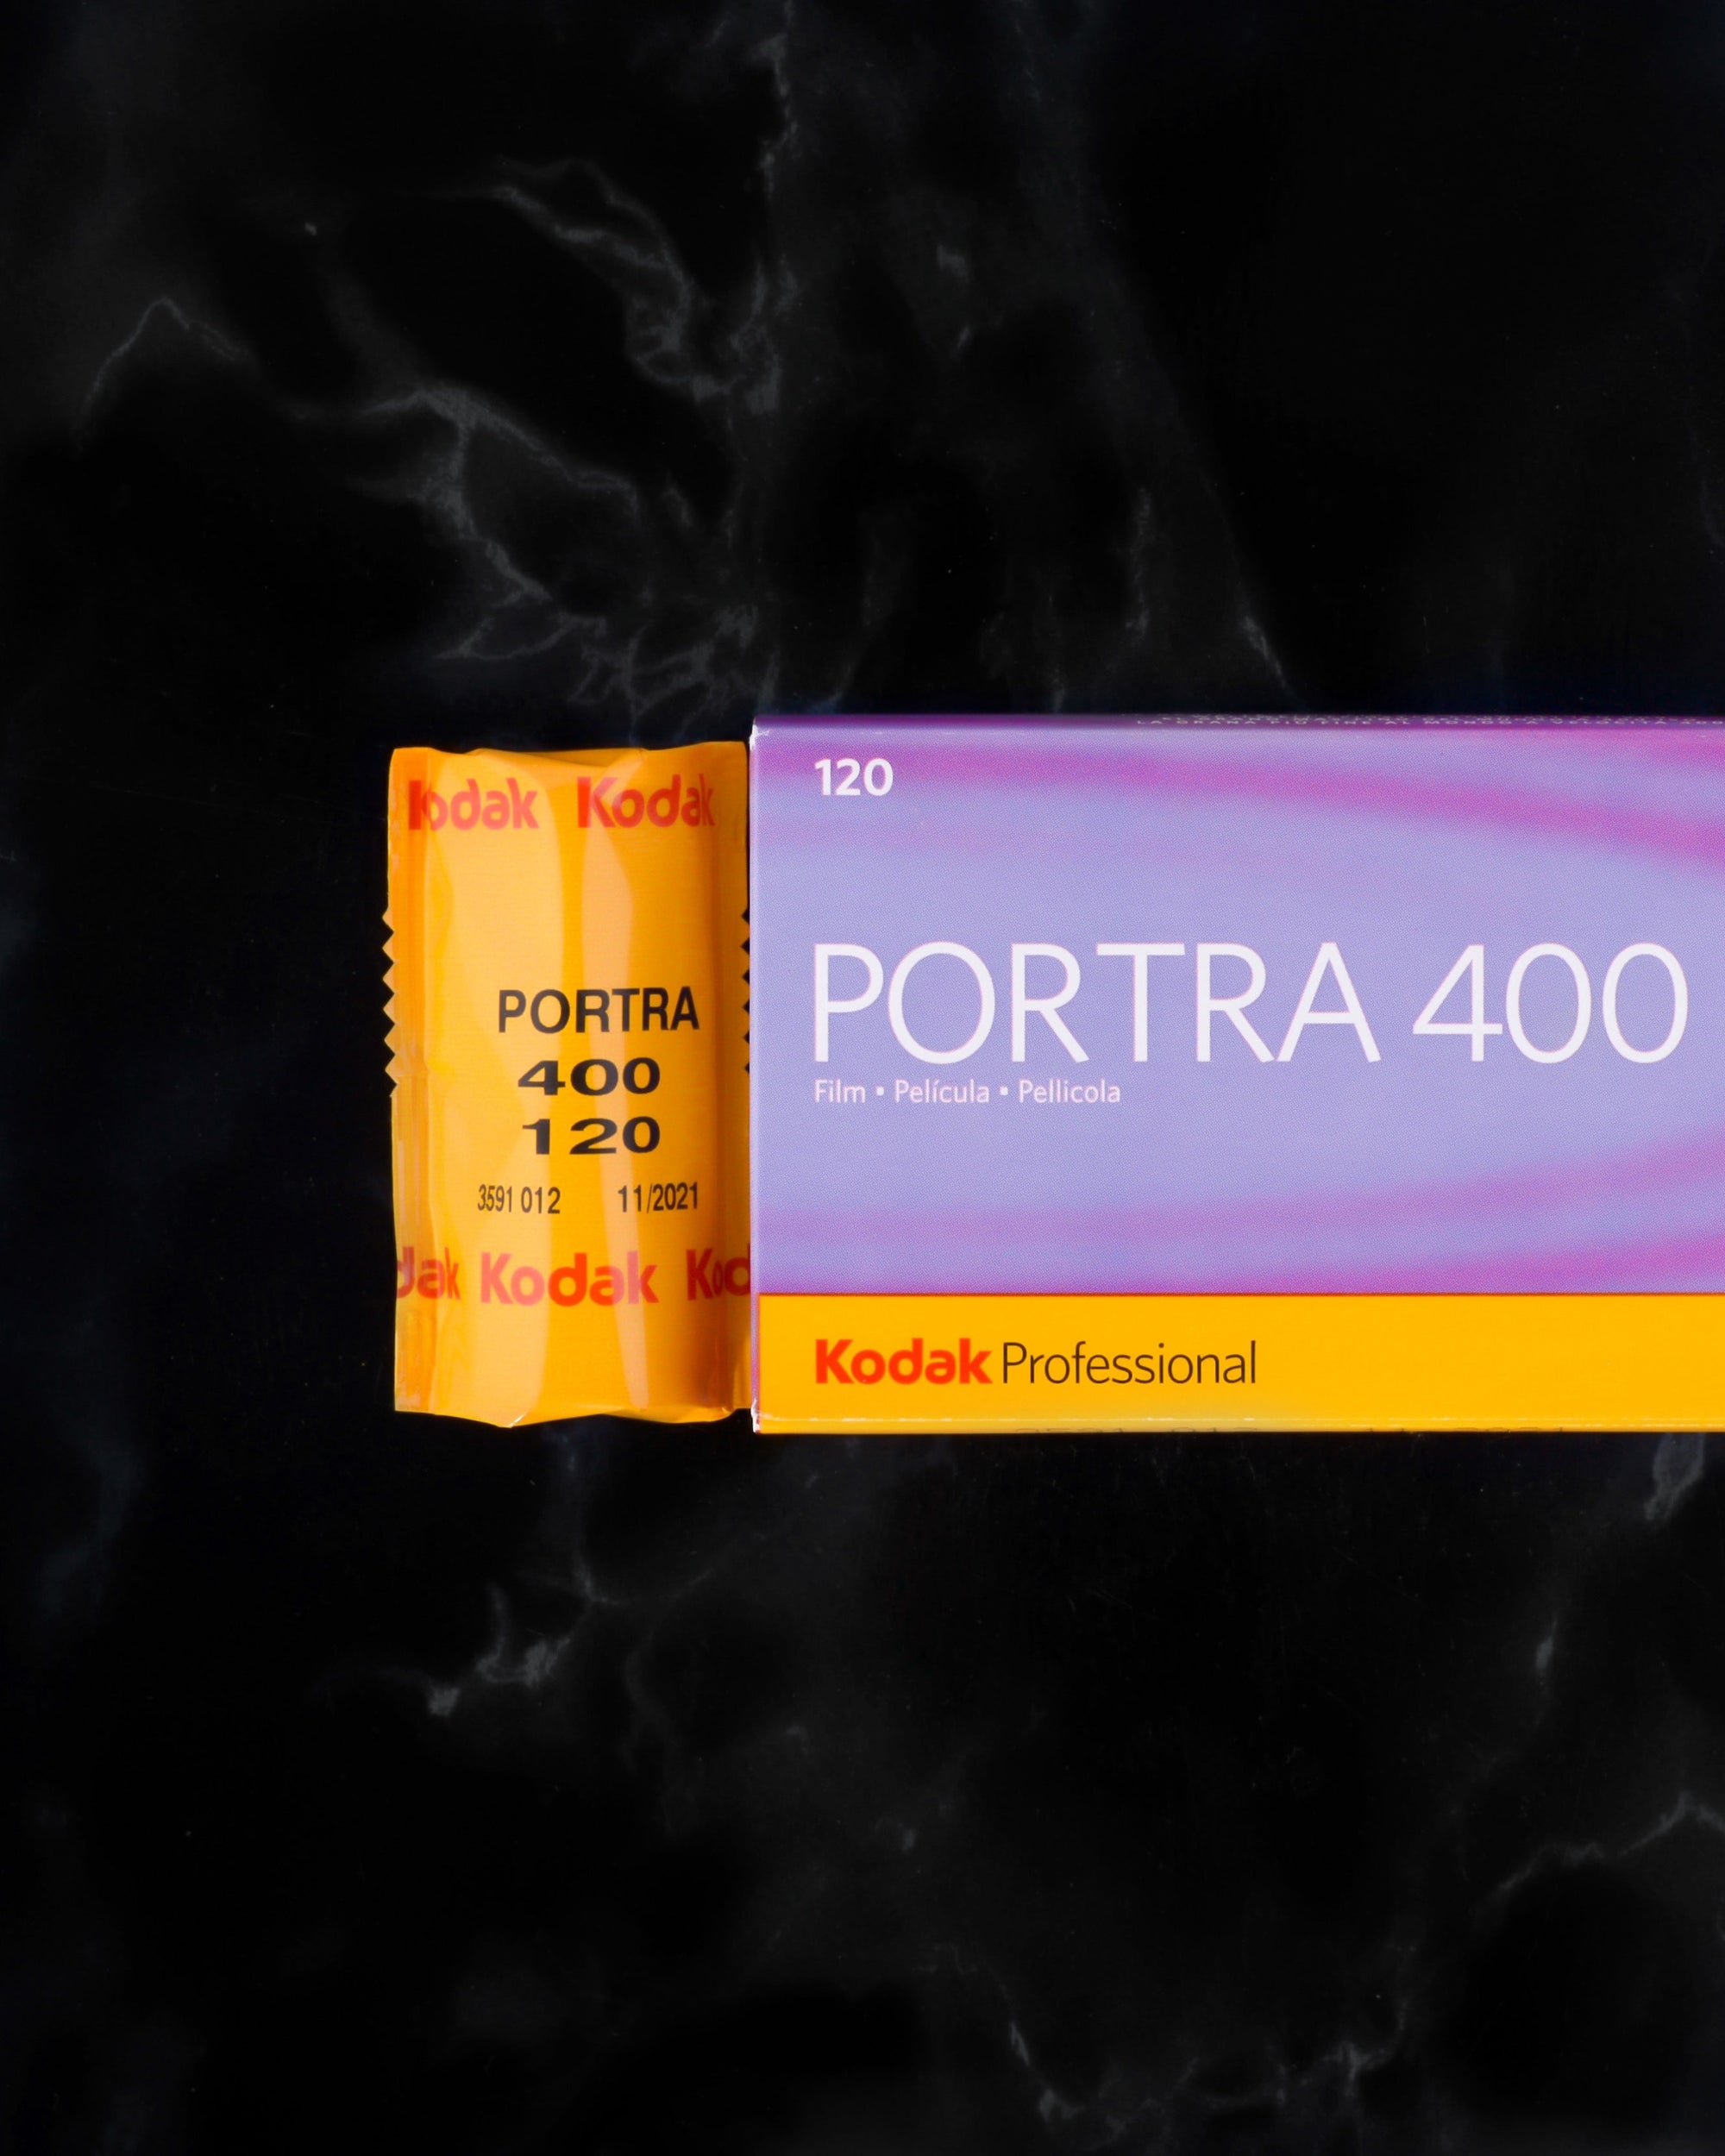 SPECIAL DEAL: Kodak Portra 400 120 film